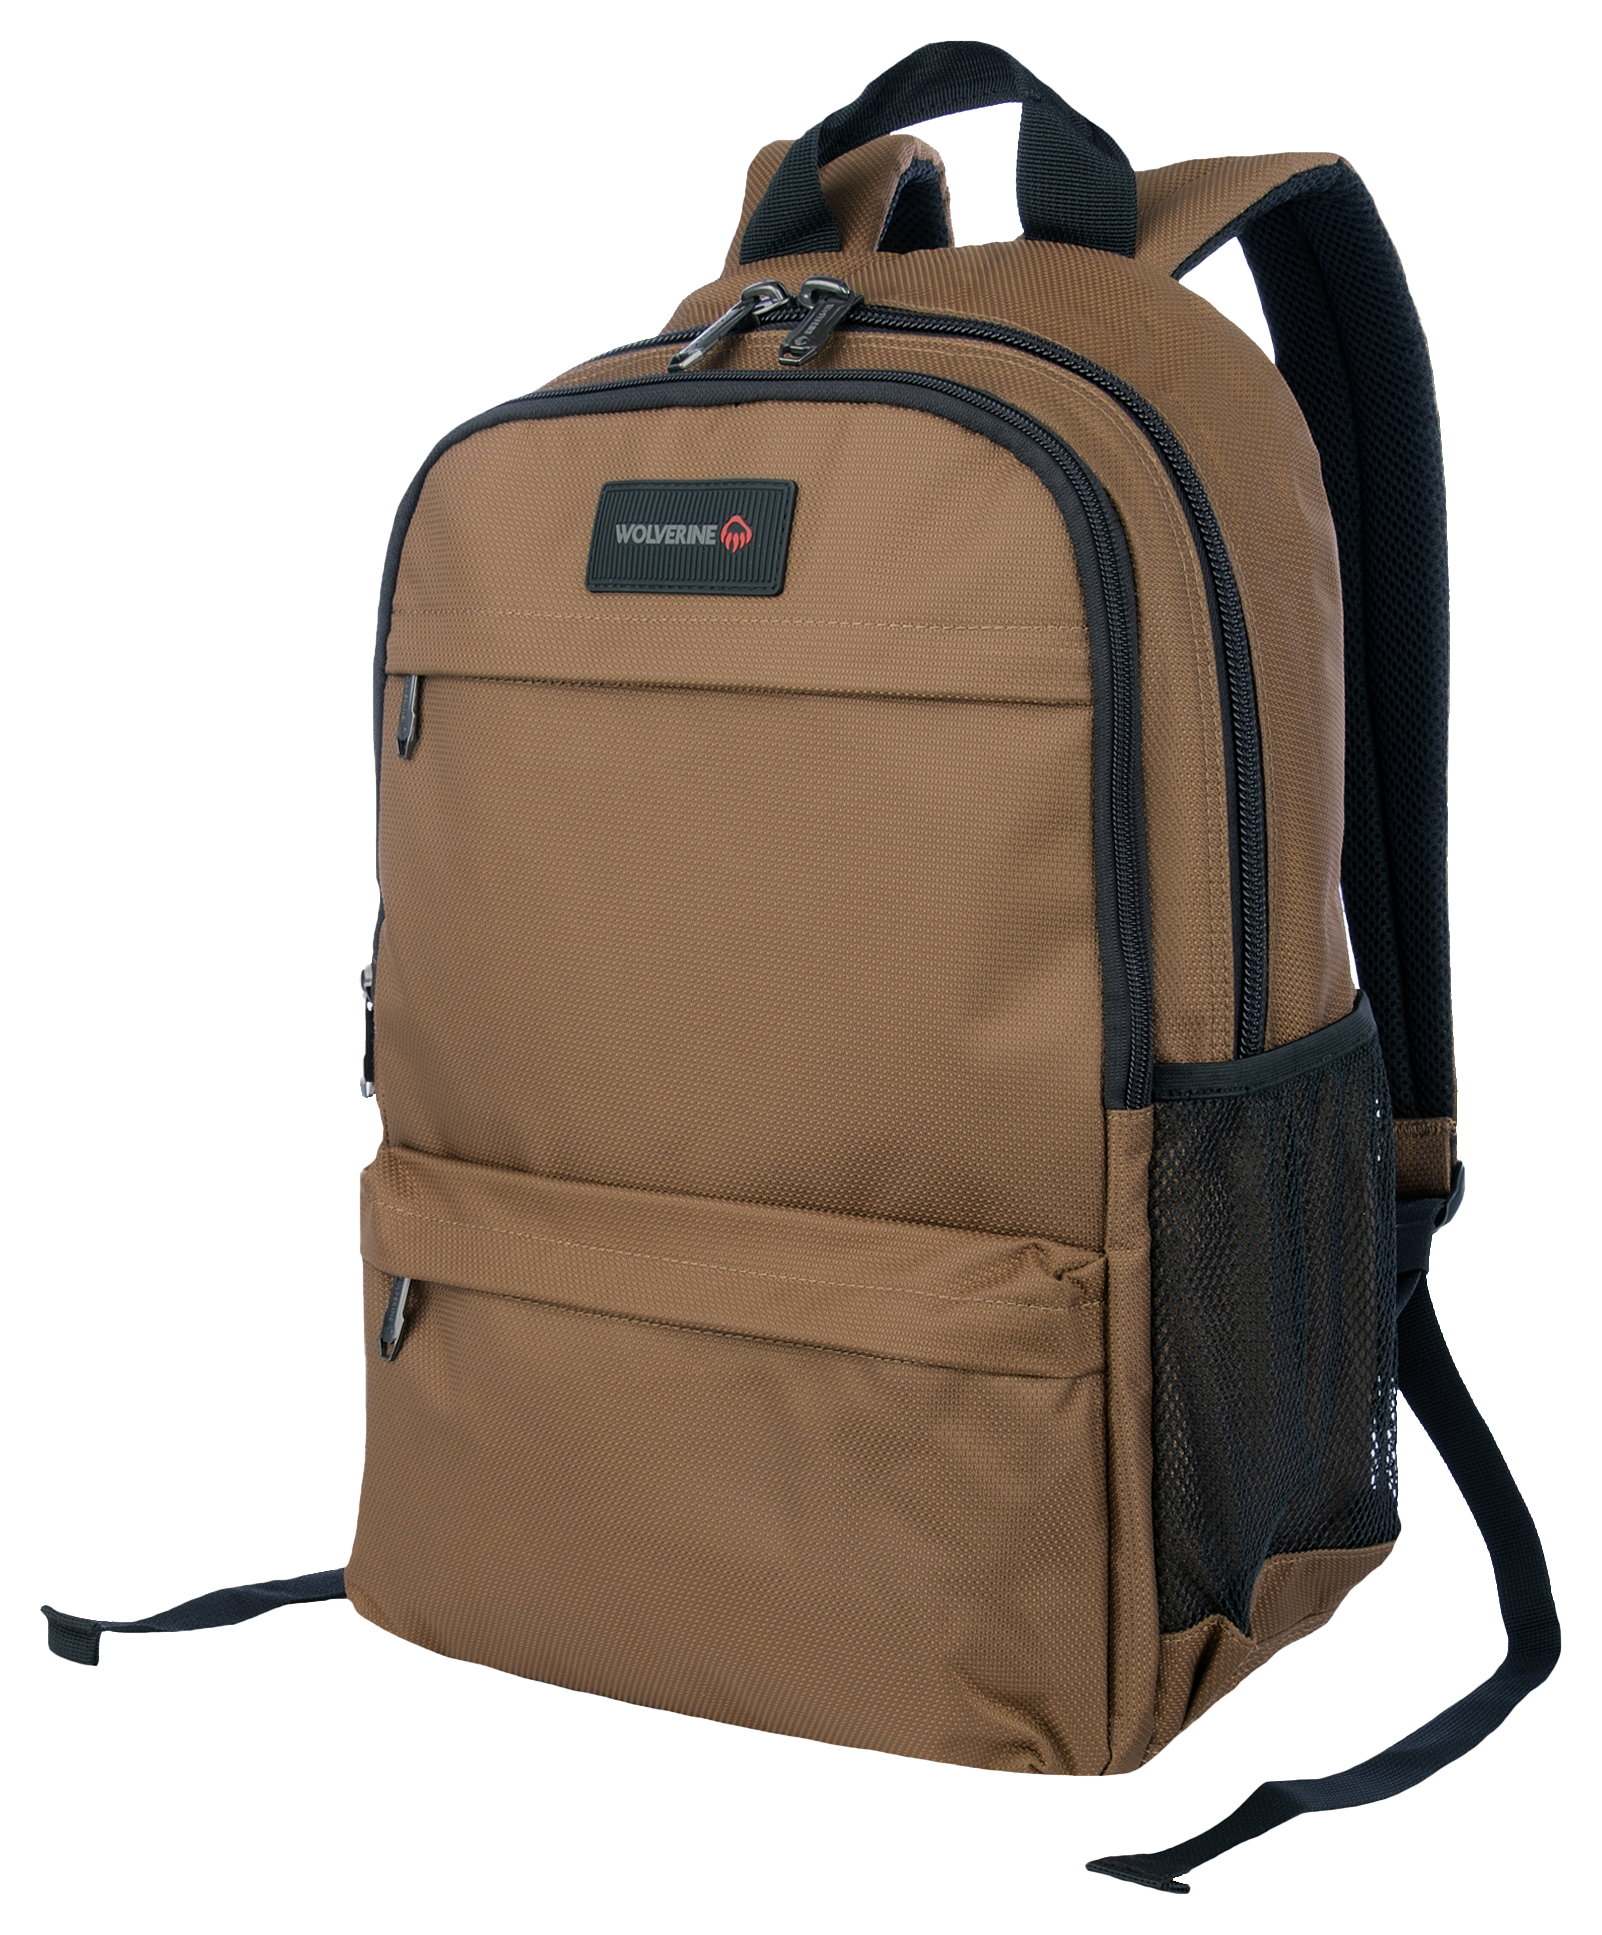 Wolverine 27L Slimline Laptop Backpack - Chestnut